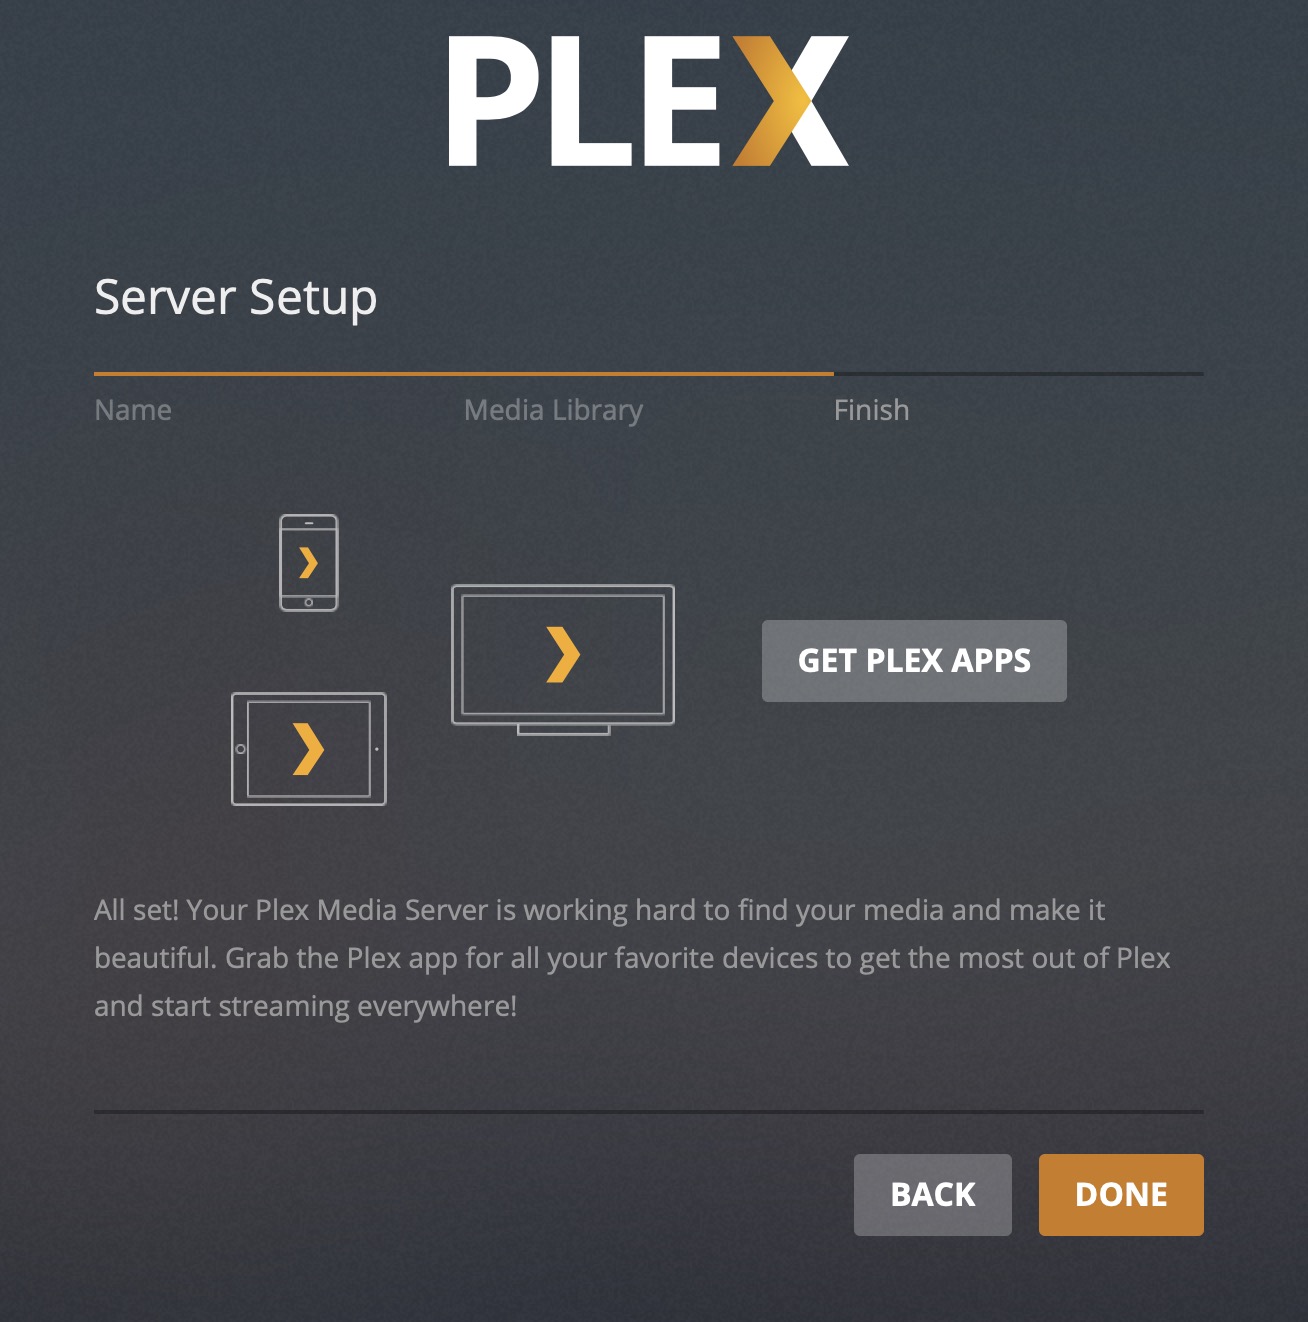 synology plex server